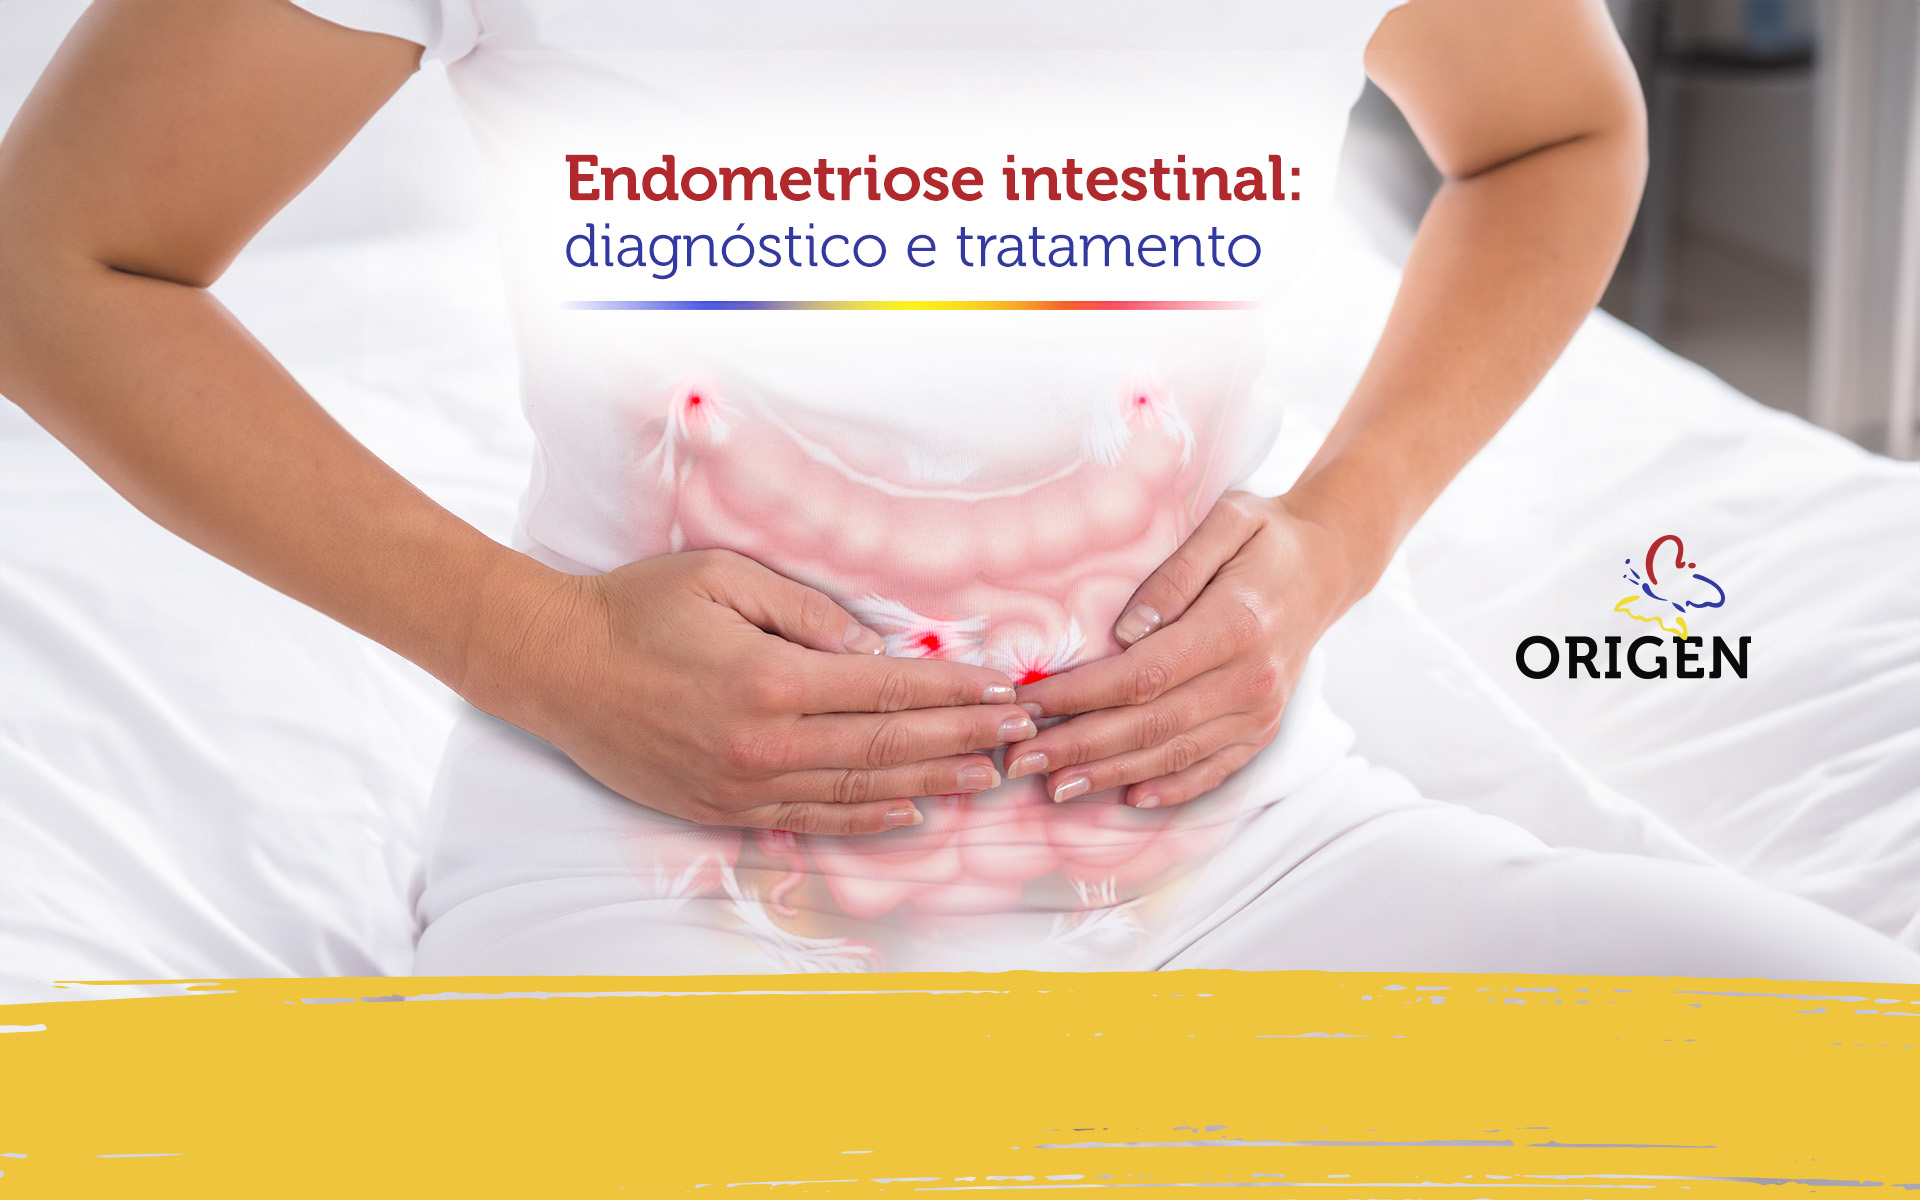 Endometriose intestinal: diagnóstico e tratamento